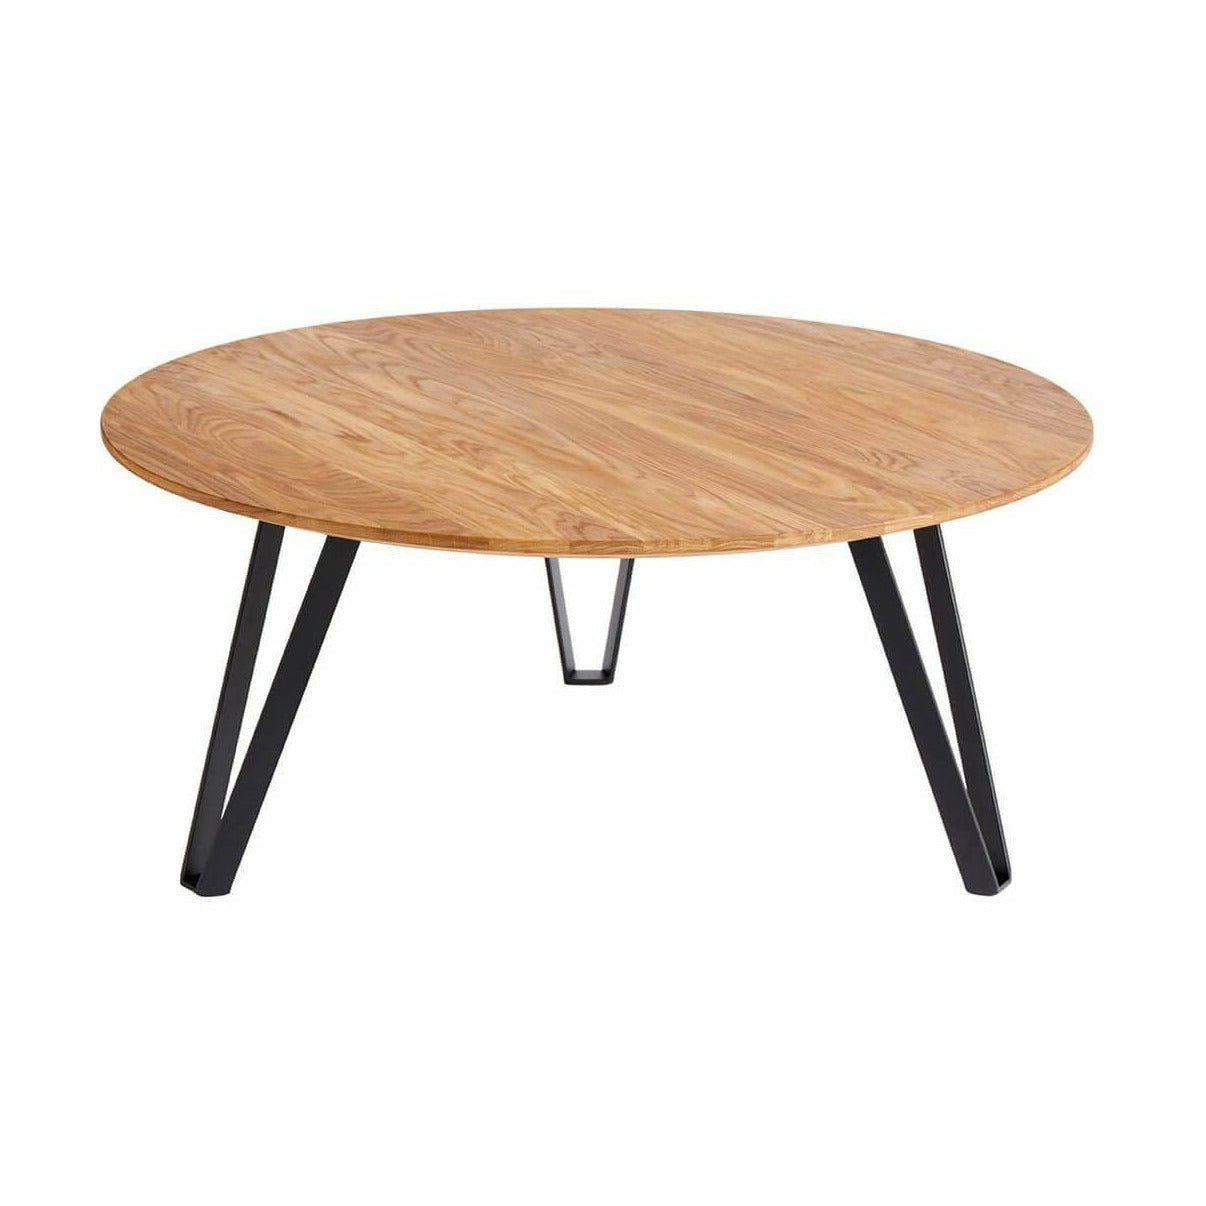 Muubs Space salontafel natuurlijk, Ø90 cm